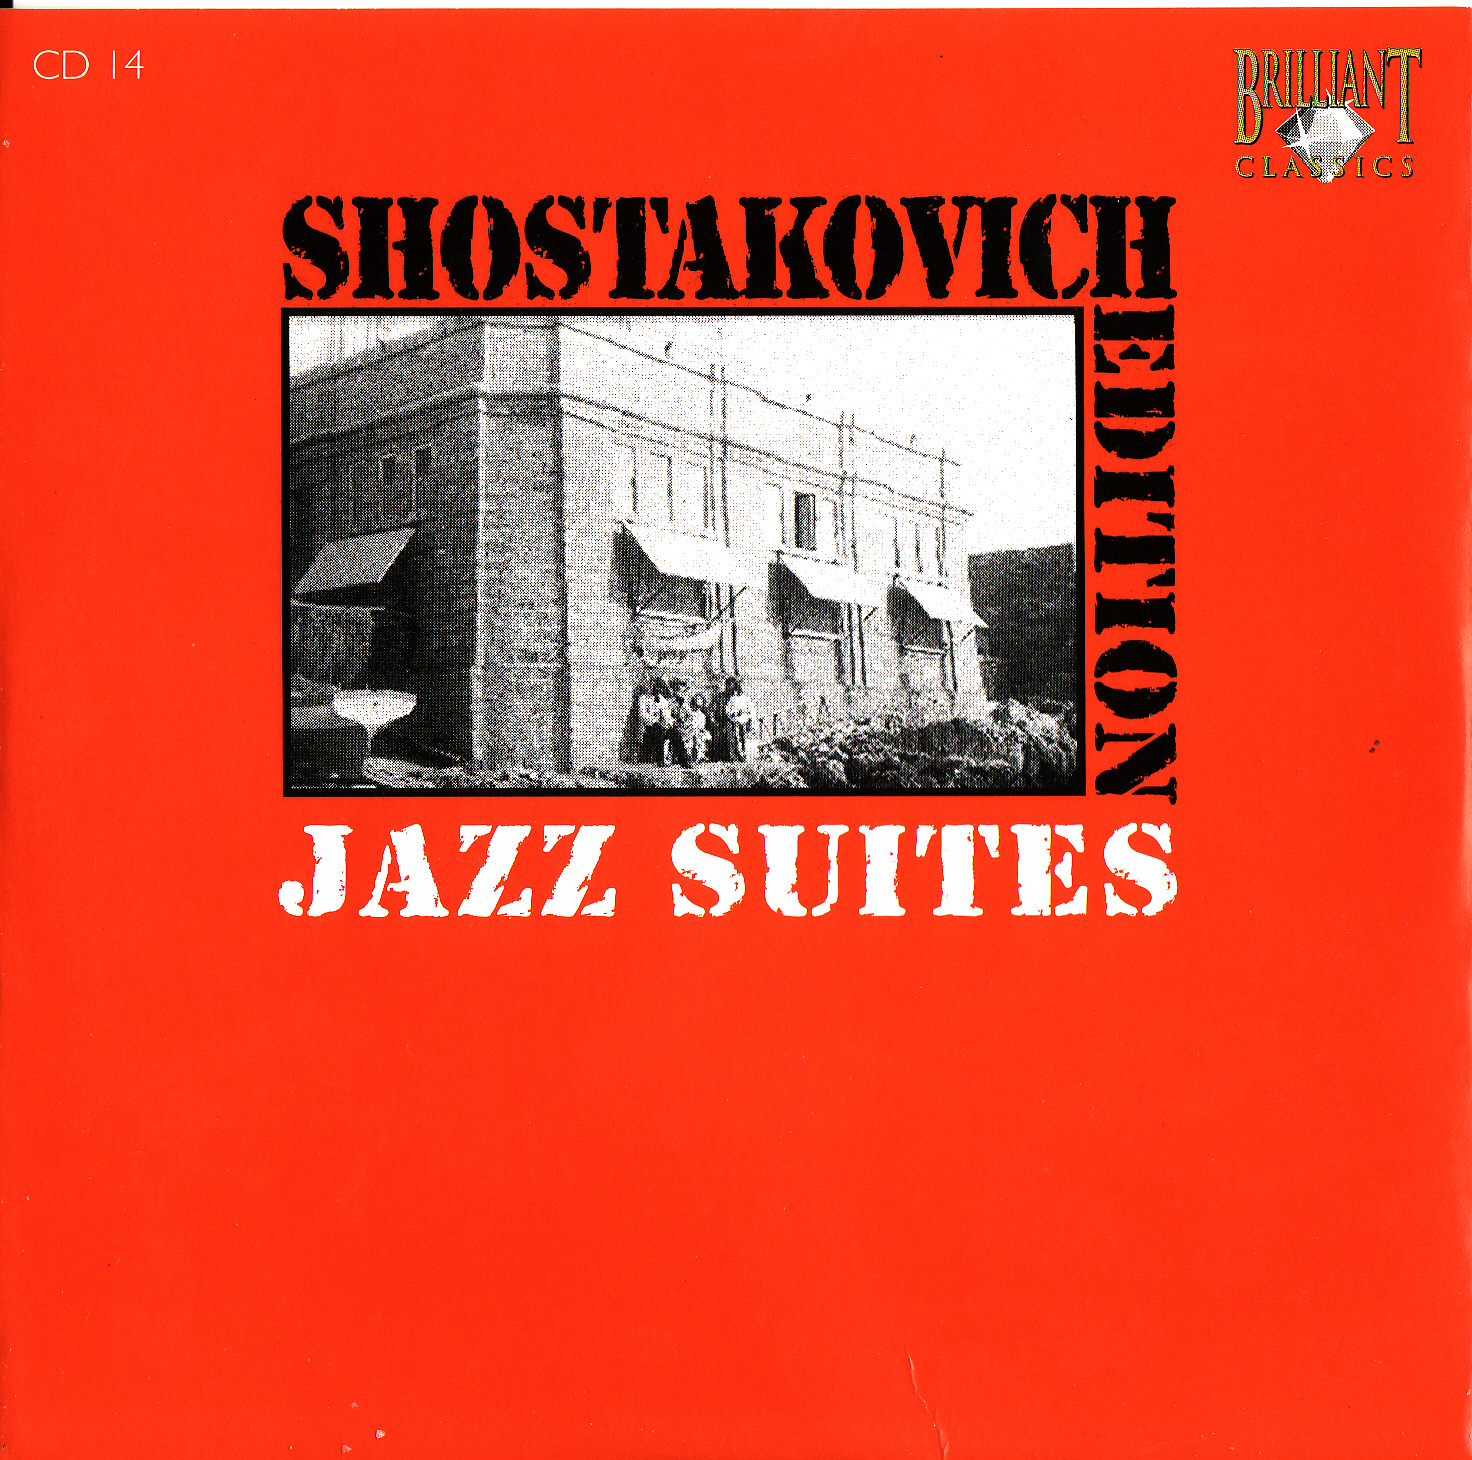 Джазовая сюита шостаковича. Шостакович джазовый оркестр. Шостакович джаз сюита 2. Шостакович джазовый оркестр 1975.